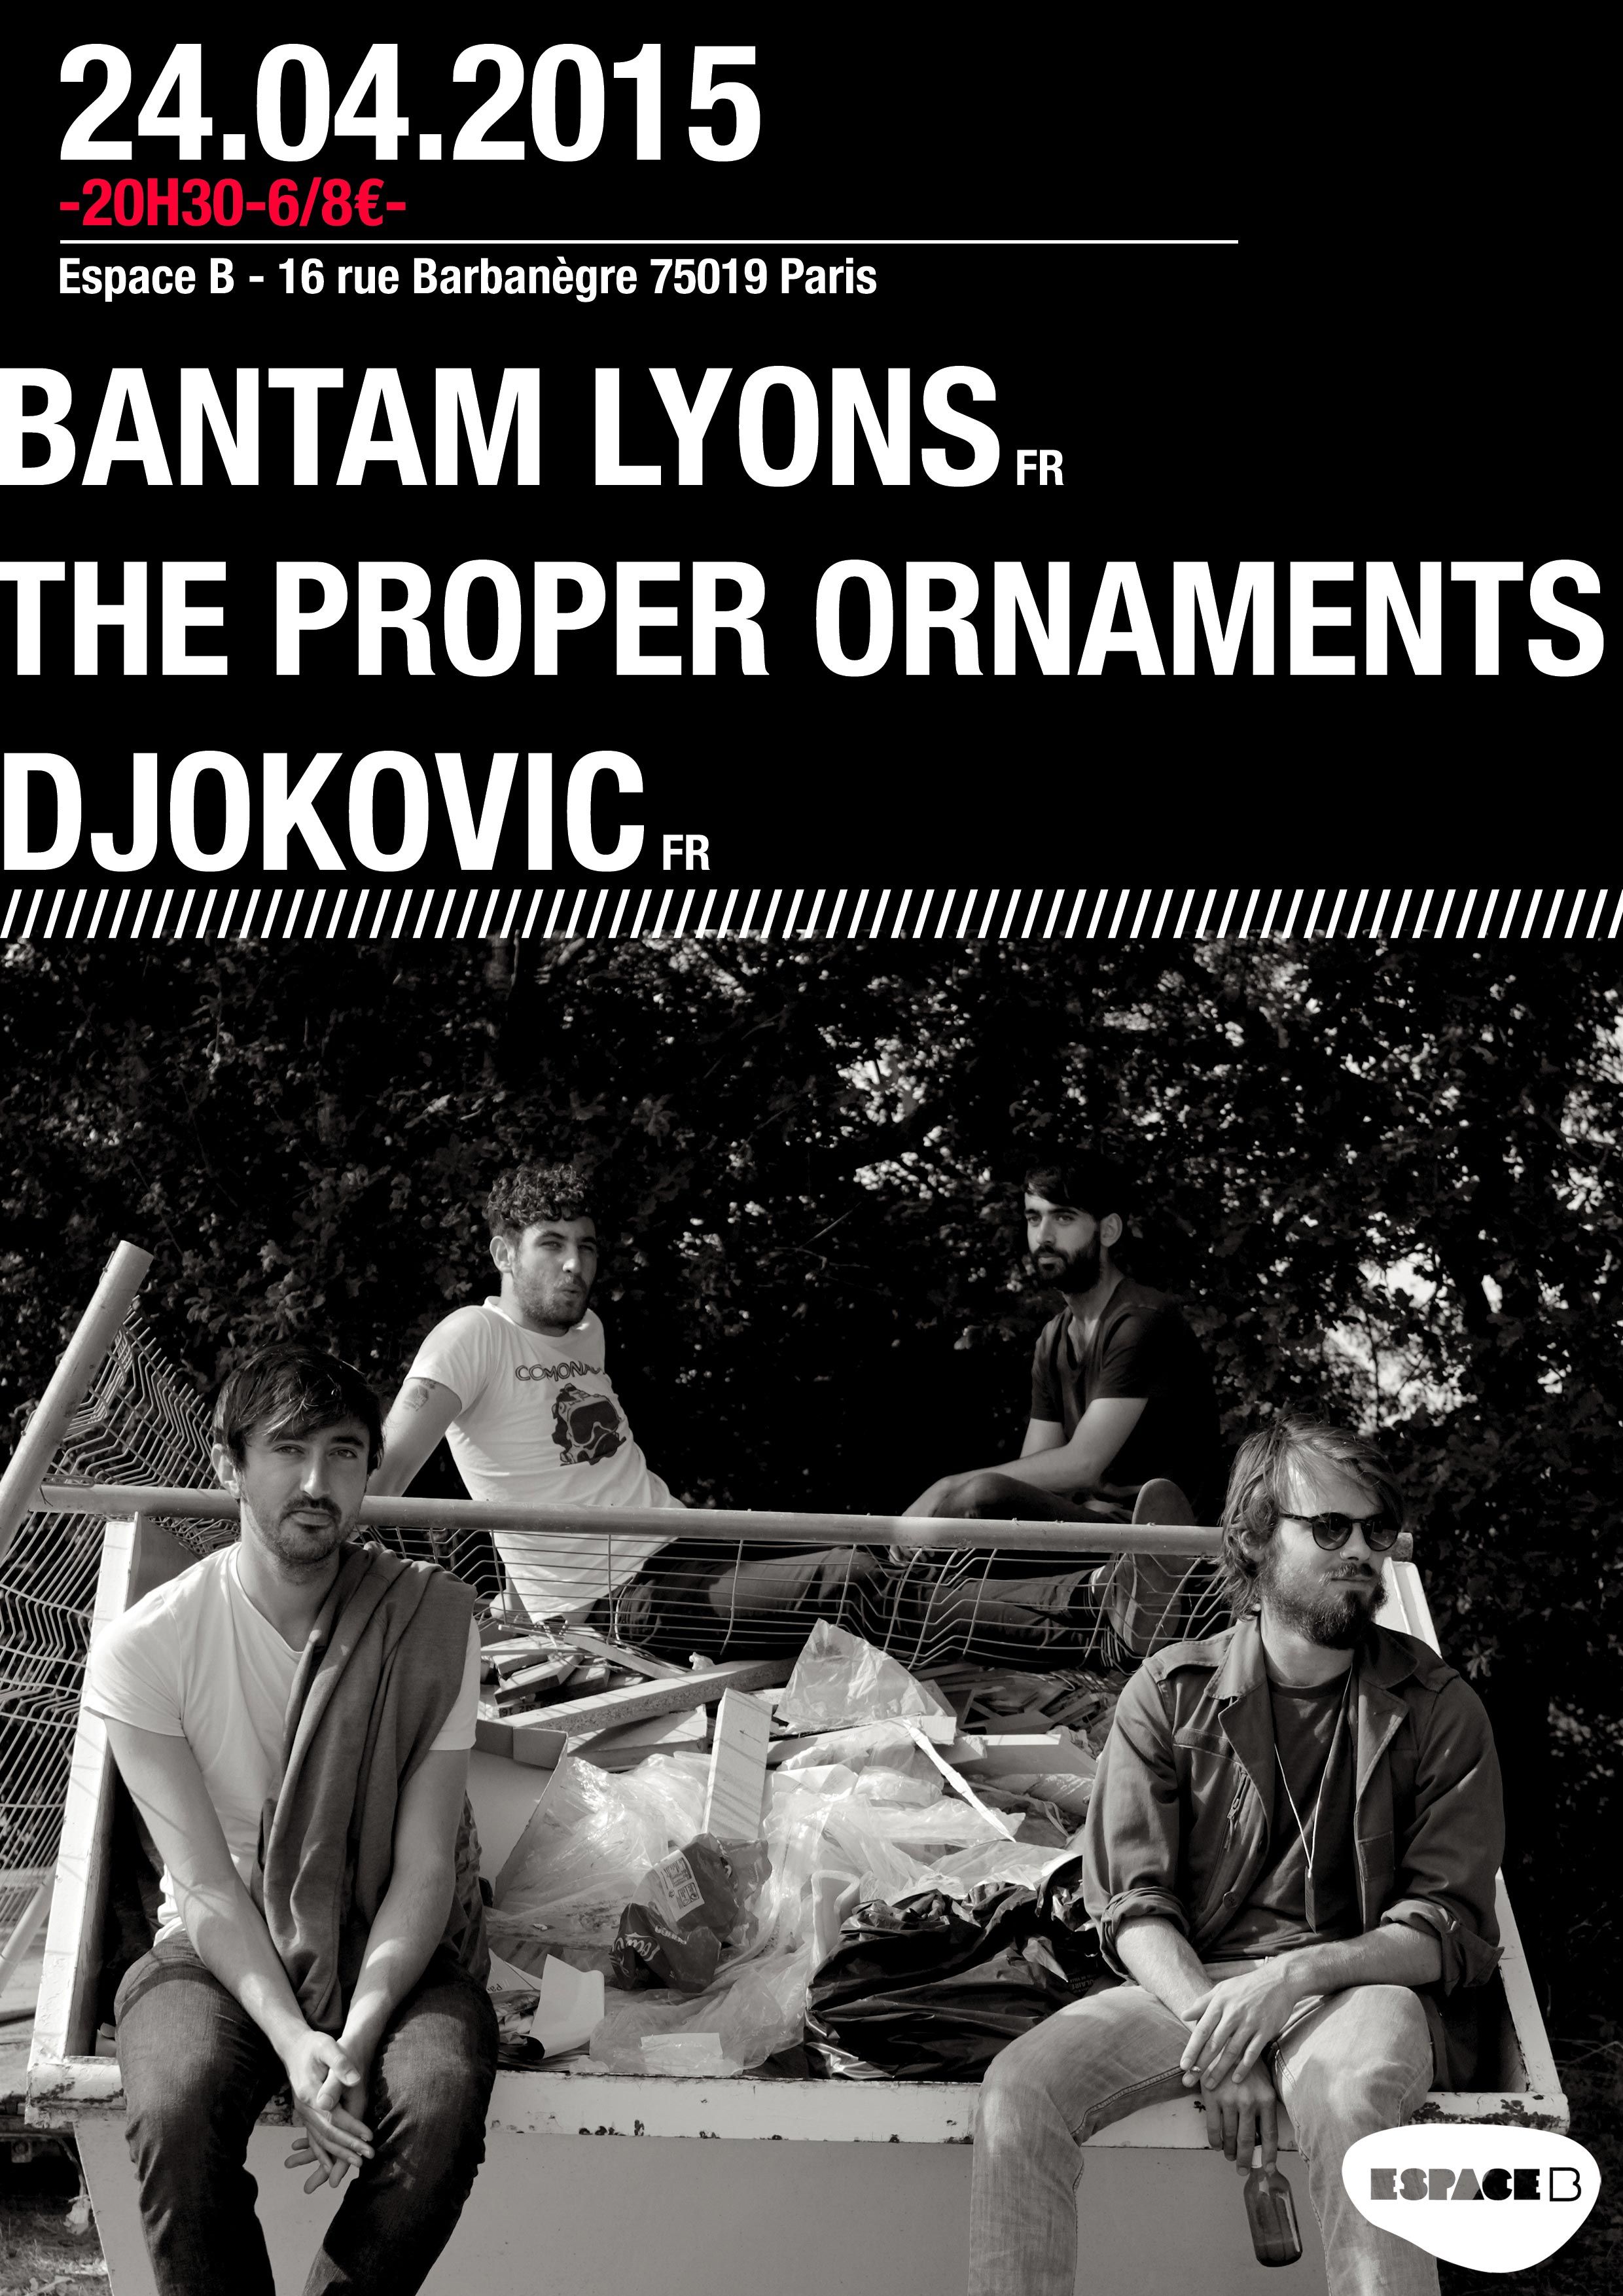 Concert  BANTAM LYONS THE PROPER ORNAMENTS DJOKOVIC  ESPACE B